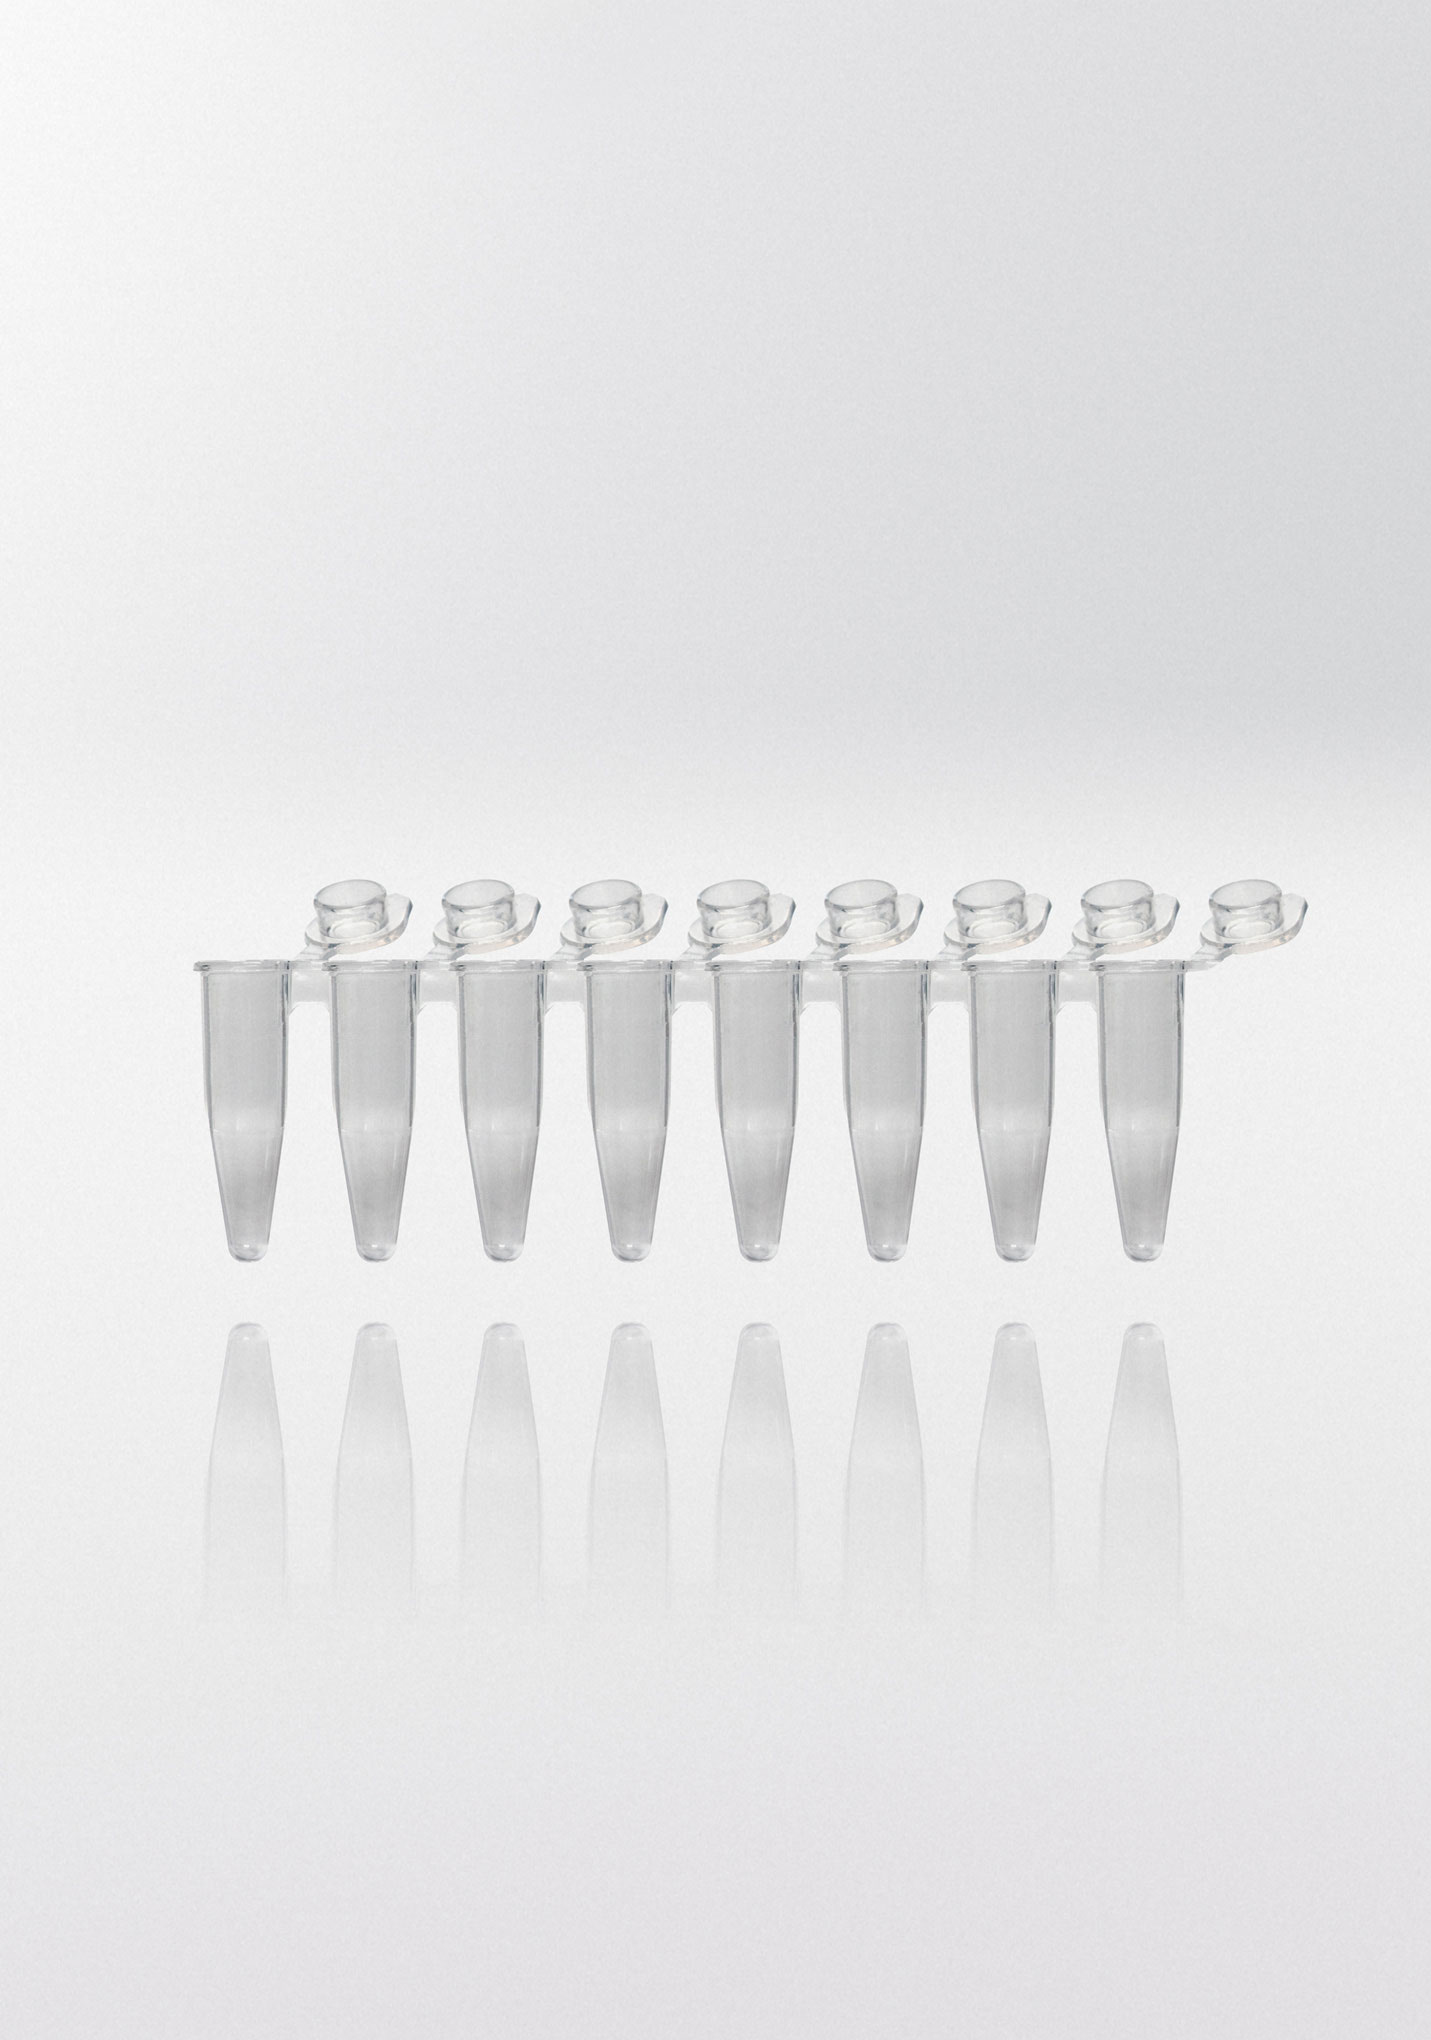 Tiras de tubos para PCR. NERBE-PLUS. Capacidad (ml): 0,2. Resist. centrif. (g): 20000. Tapón: Plano. Color tubo/tapón: Transparente/ Transparente. Esterilidad: PCR Ready. qPCR: Sí